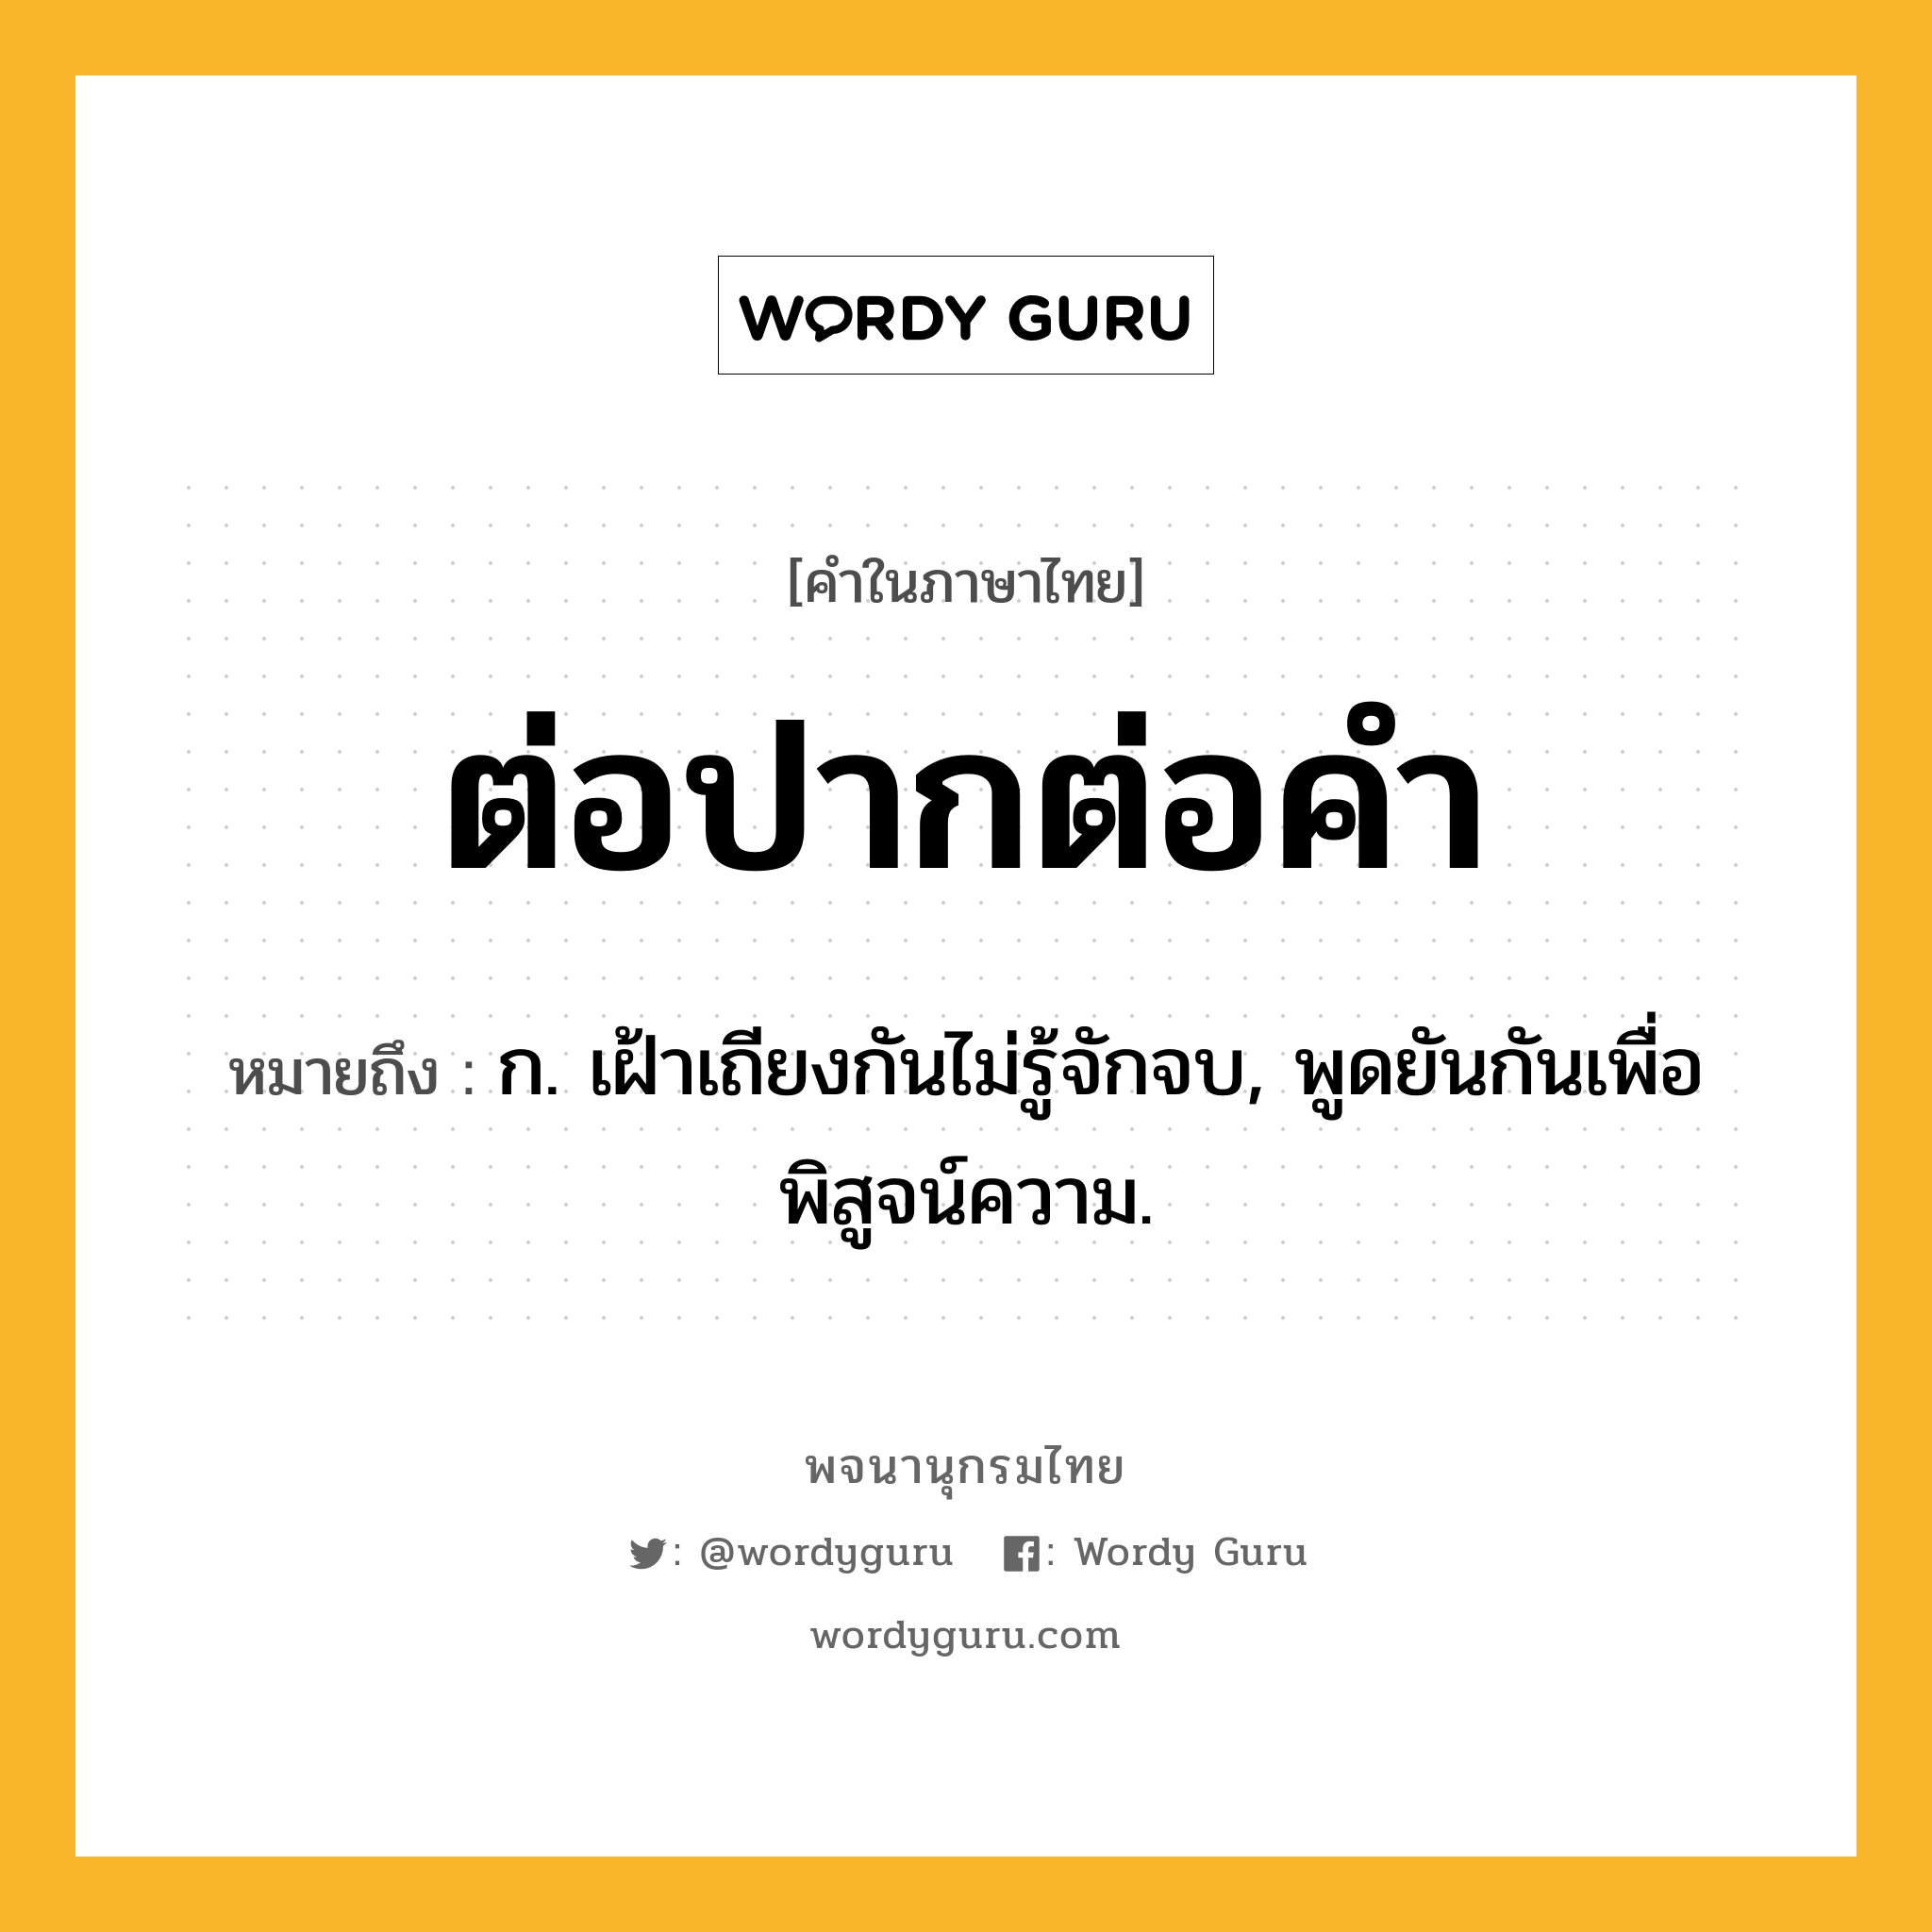 ต่อปากต่อคำ ความหมาย หมายถึงอะไร?, คำในภาษาไทย ต่อปากต่อคำ หมายถึง ก. เฝ้าเถียงกันไม่รู้จักจบ, พูดยันกันเพื่อพิสูจน์ความ.